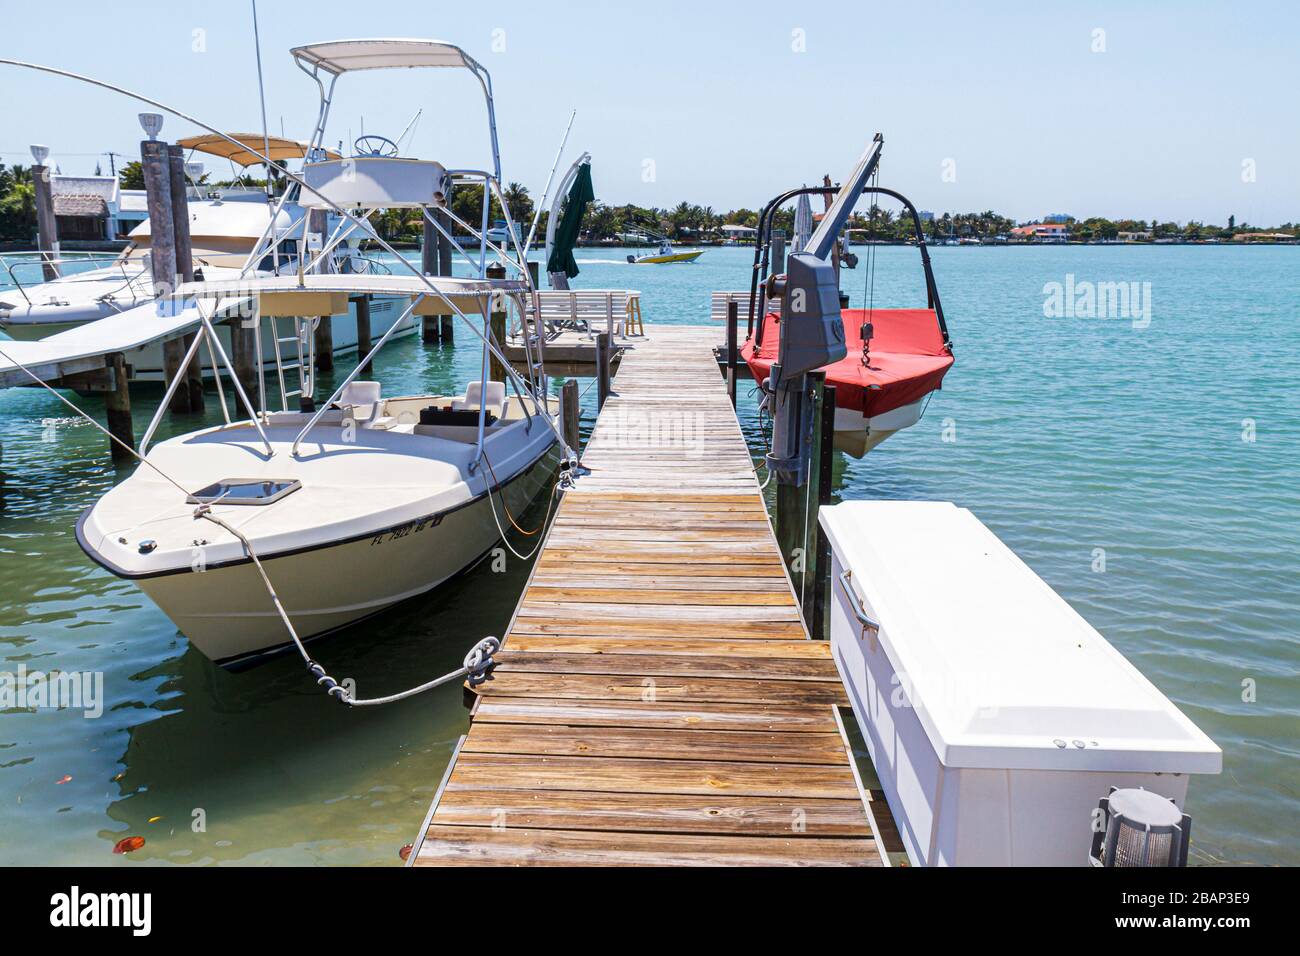 Miami Beach Florida,Normandy Shores,Biscayne Bay water,dock,barco,visitantes viaje recorrido turístico turismo puntos de referencia cultura cultural,va Foto de stock